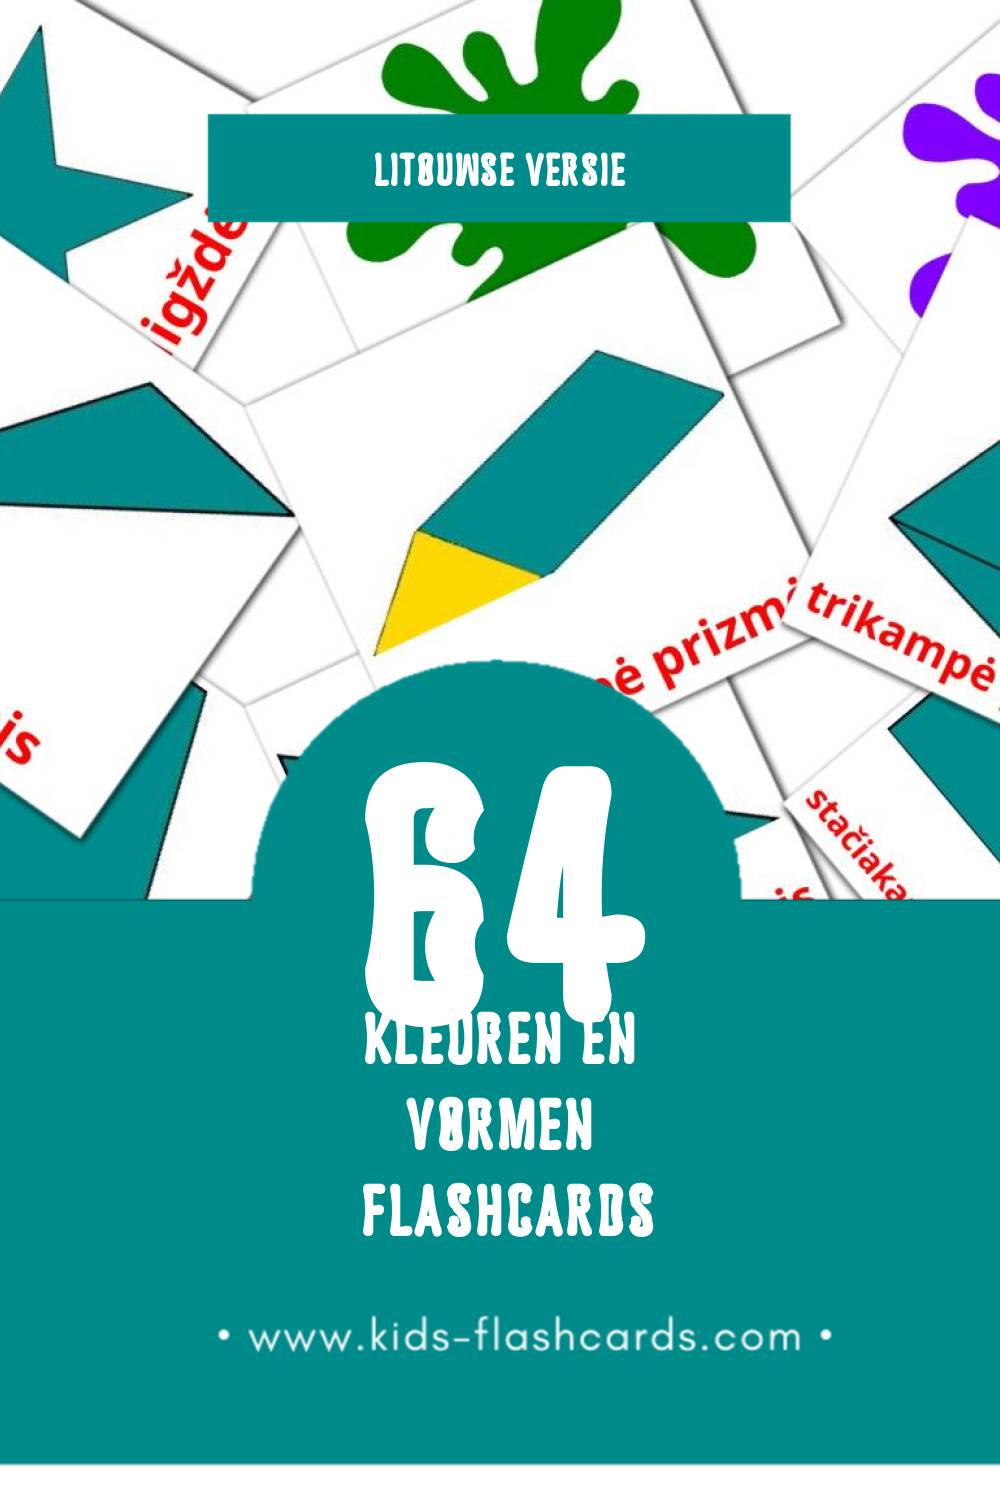 Visuele Warna den Bentuk Flashcards voor Kleuters (64 kaarten in het Litouws)